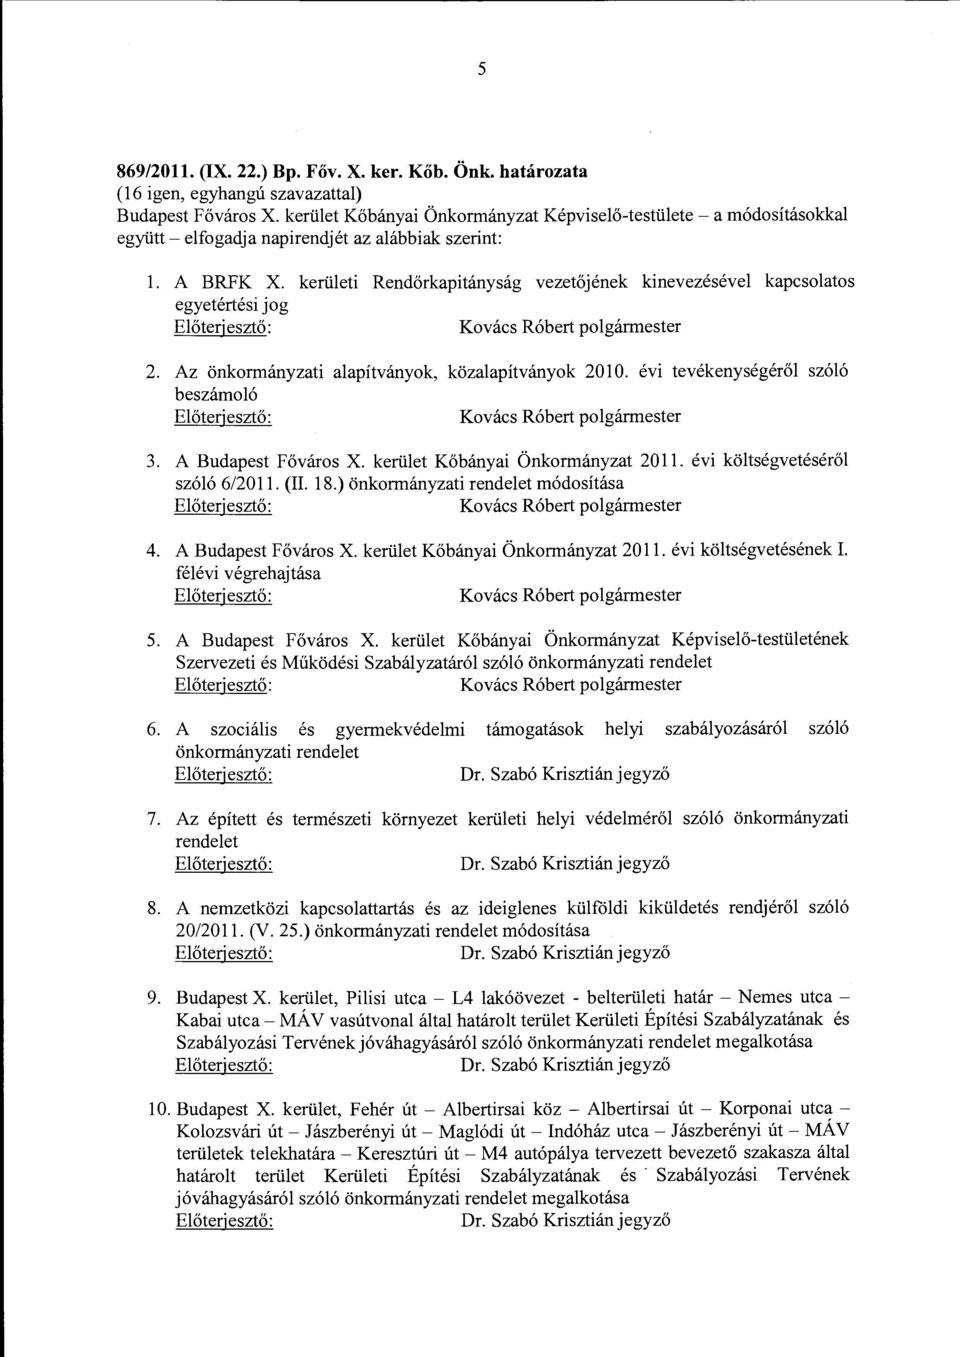 kerületi Rendőrkapitányság vezetőjének kinevezésével kapcsolatos egyetértési jog Kovács Róbert polgármester 2. Az önkormányzati alapítványok, közalapítványok 2010.